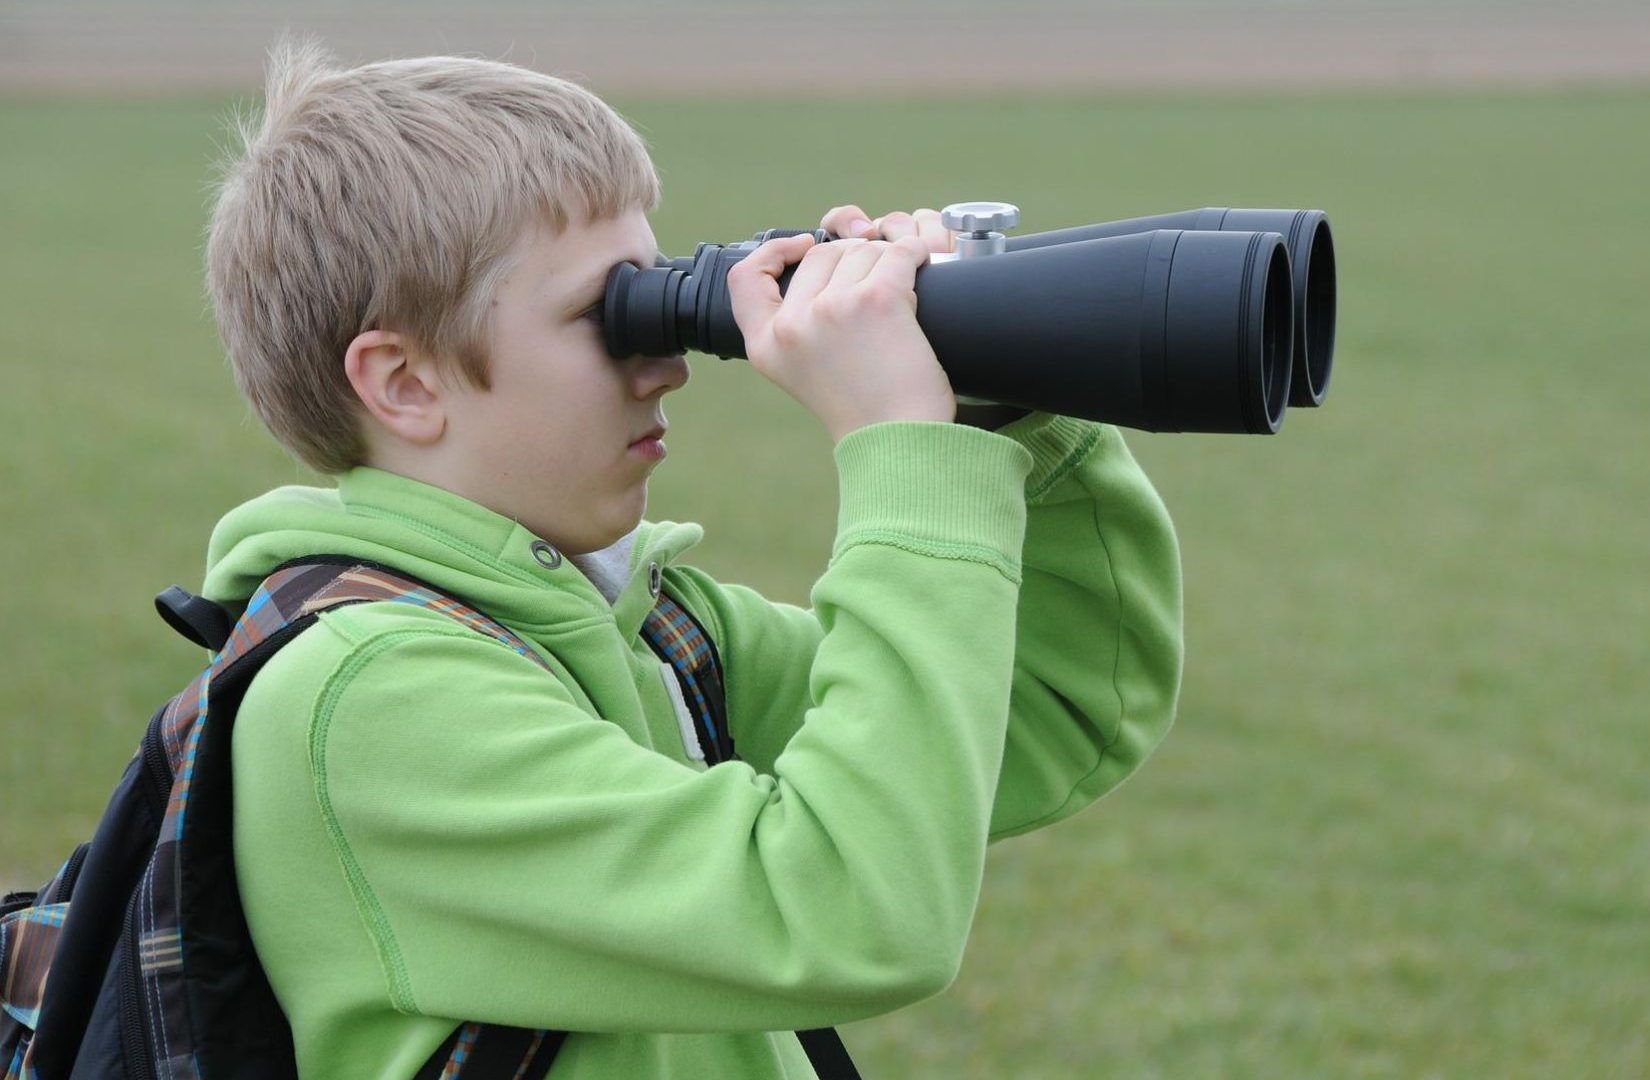 Chlapec pozoruje dalekohledem vzdálený objekt